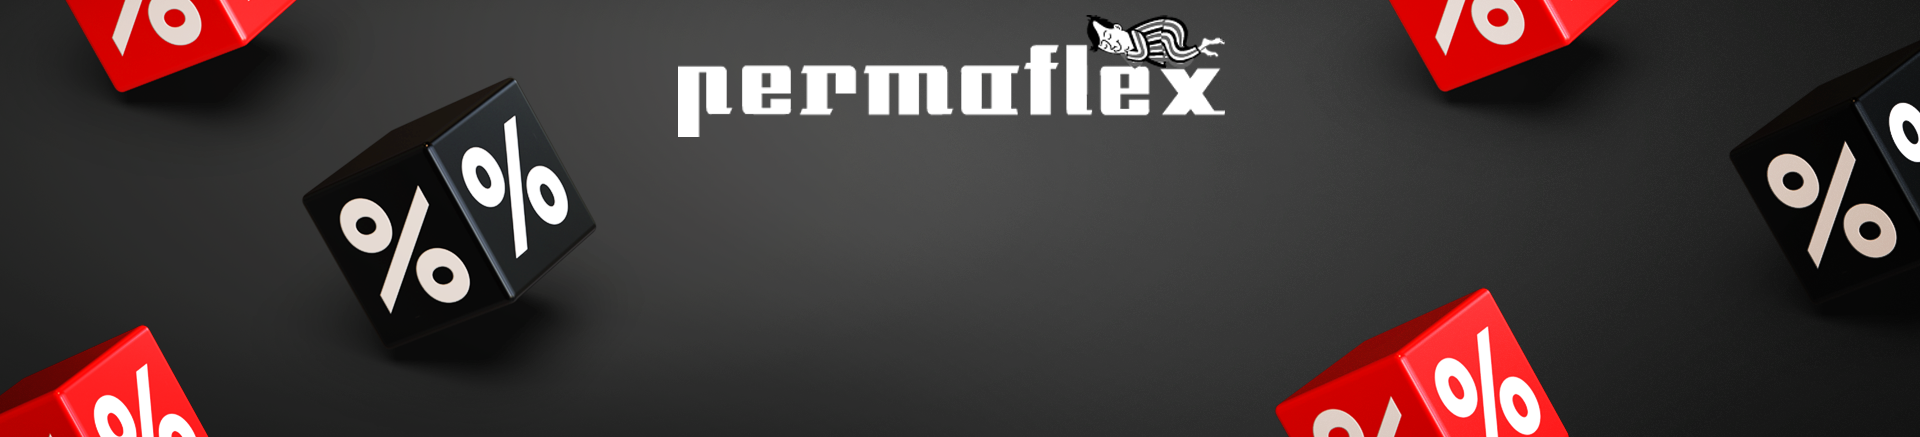 Promozione Permaflex